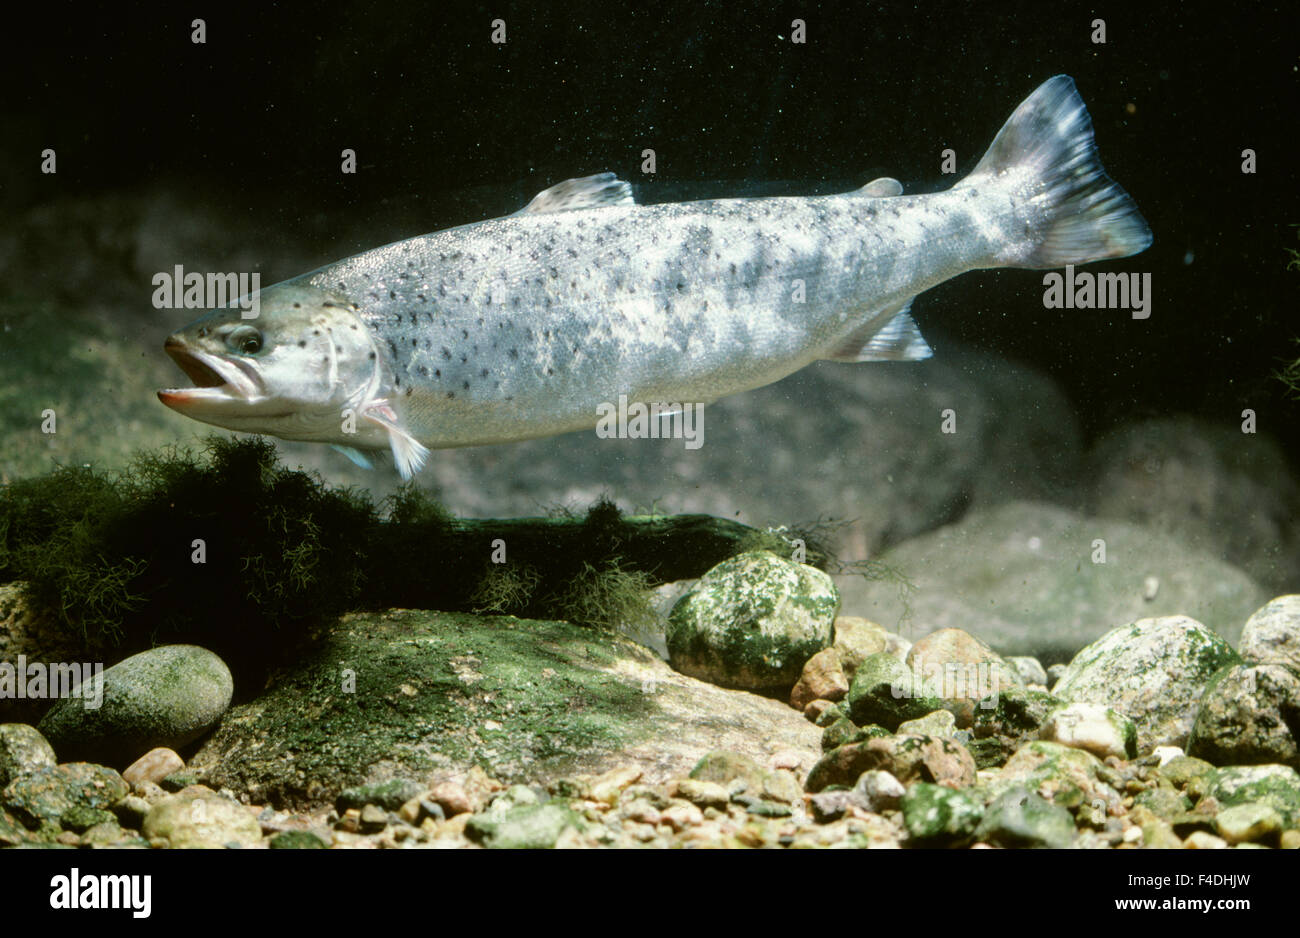 Fish underwater Stock Photo